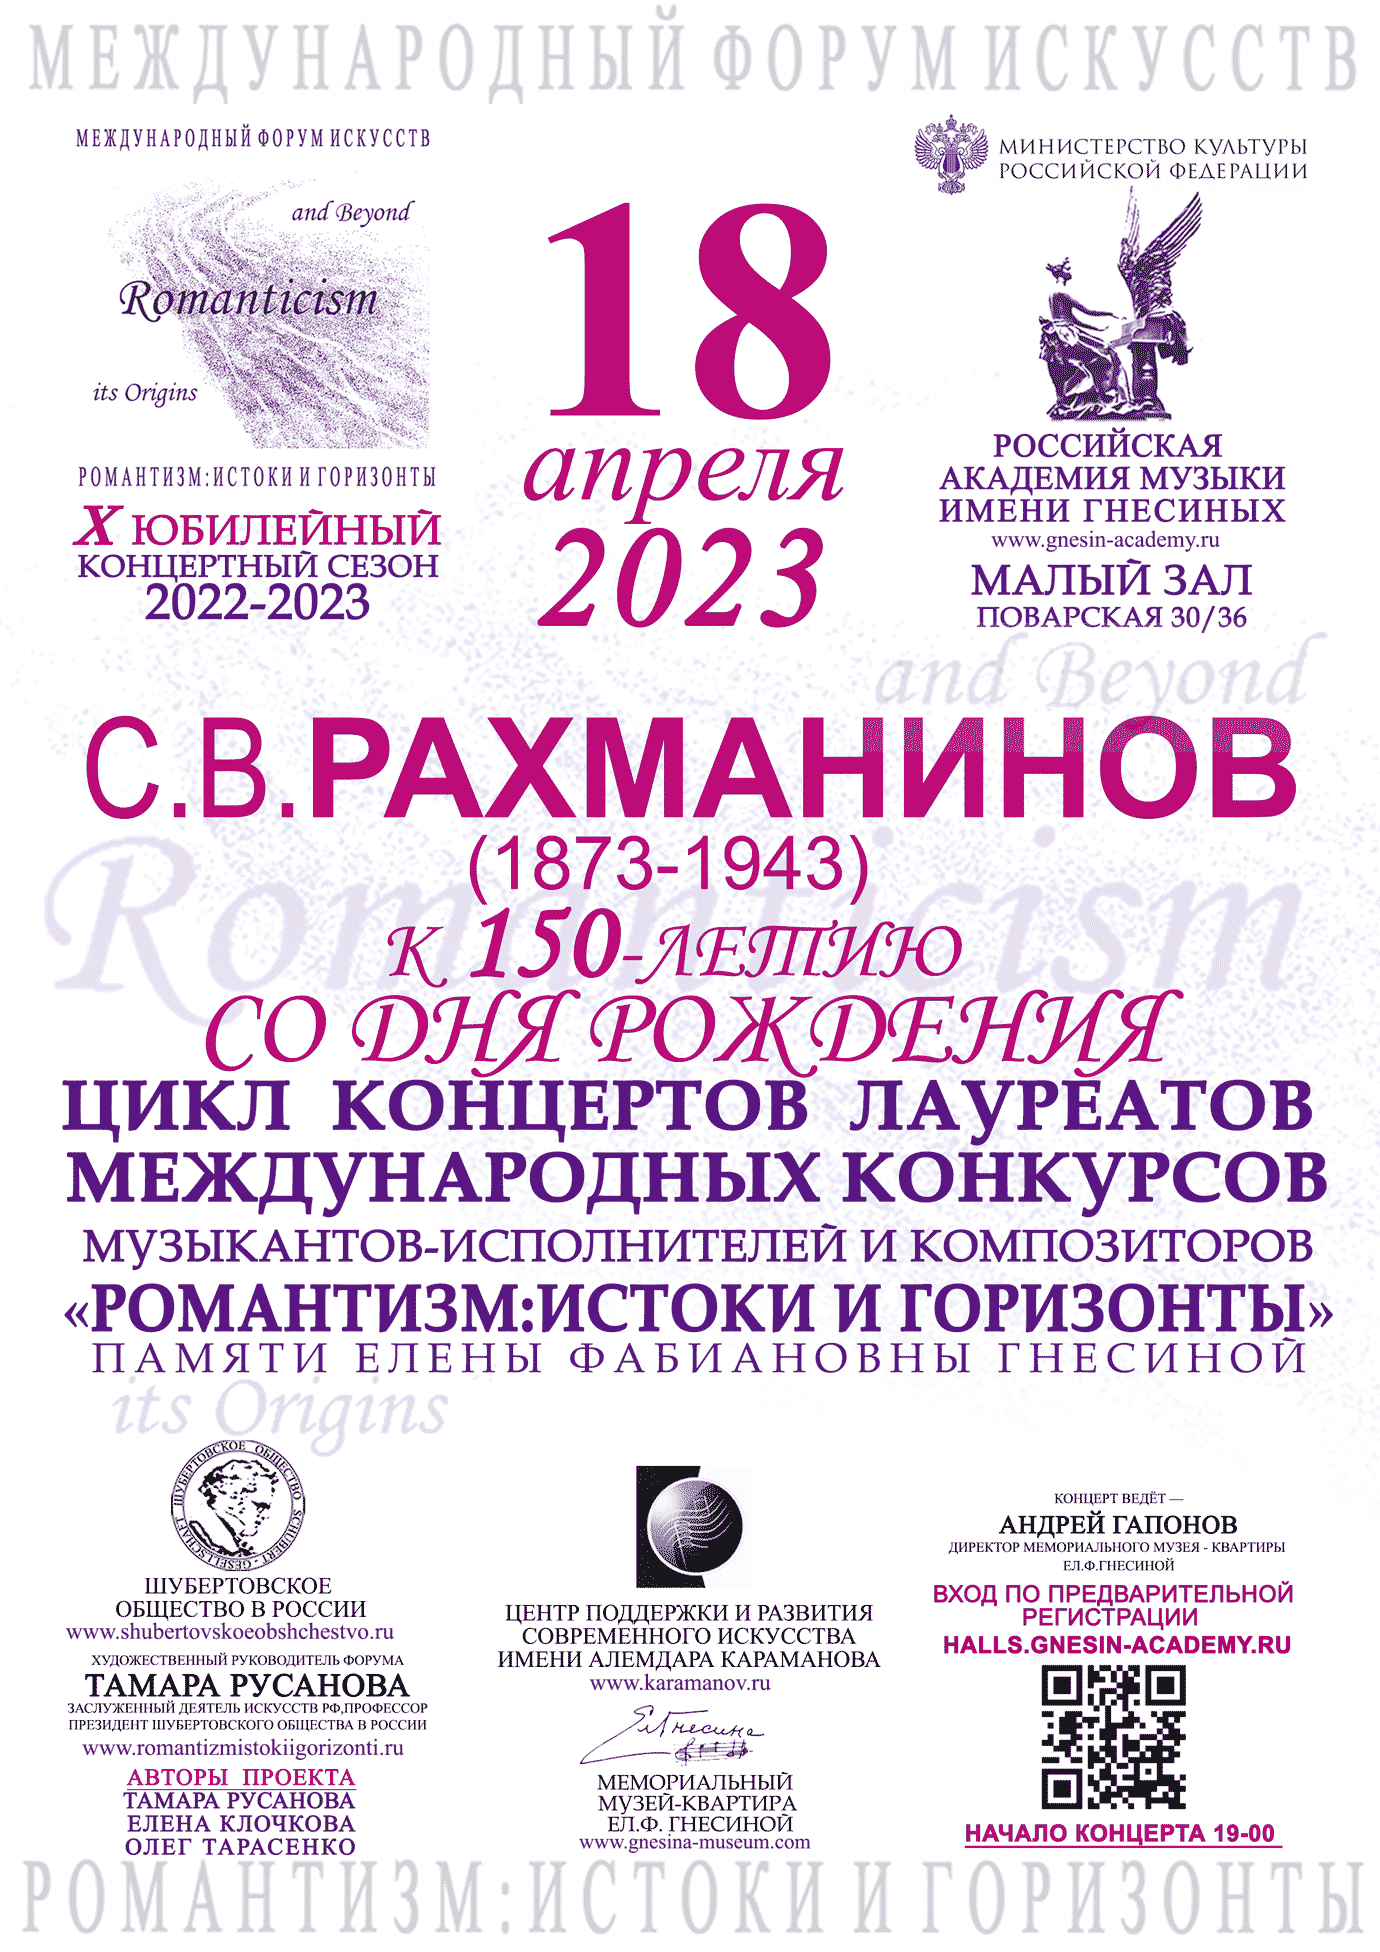 C.В. Рахманинов (1873-1943) к 150-летию со дня рождения